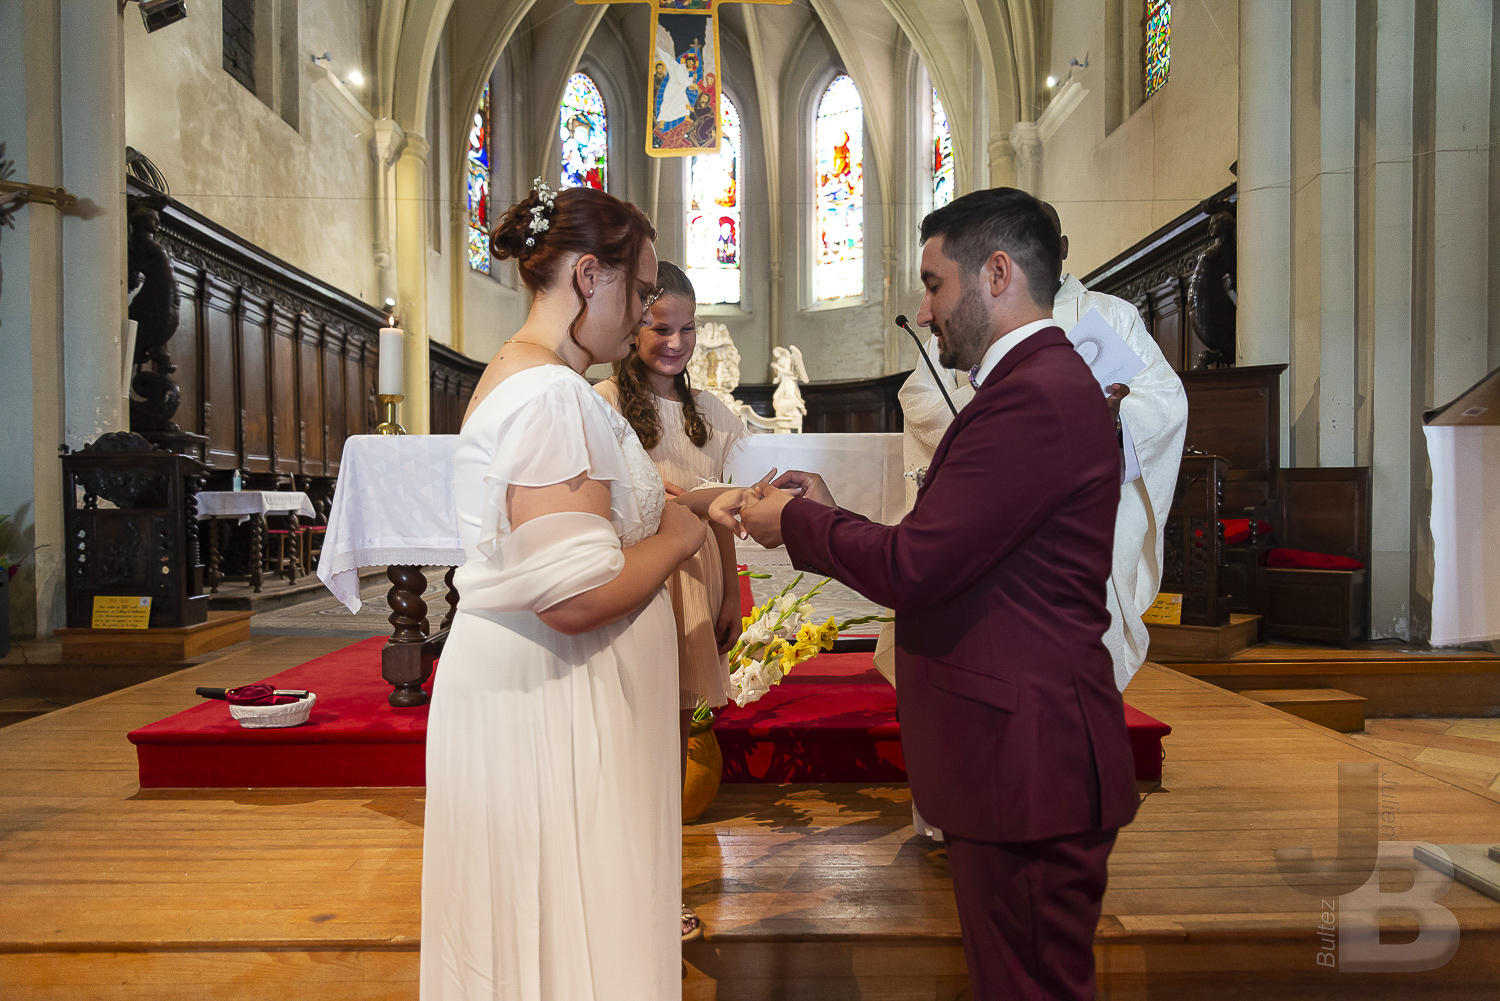 Le samedi 30 juillet, a l'église St Sauveur de Castelsarrasin (82 - Tarn-et-Garonne), c'est déroulé le mariage religieux entre M. Julien B. et Mme Charlyne B. Copyright : Julien Bultez Prod. 